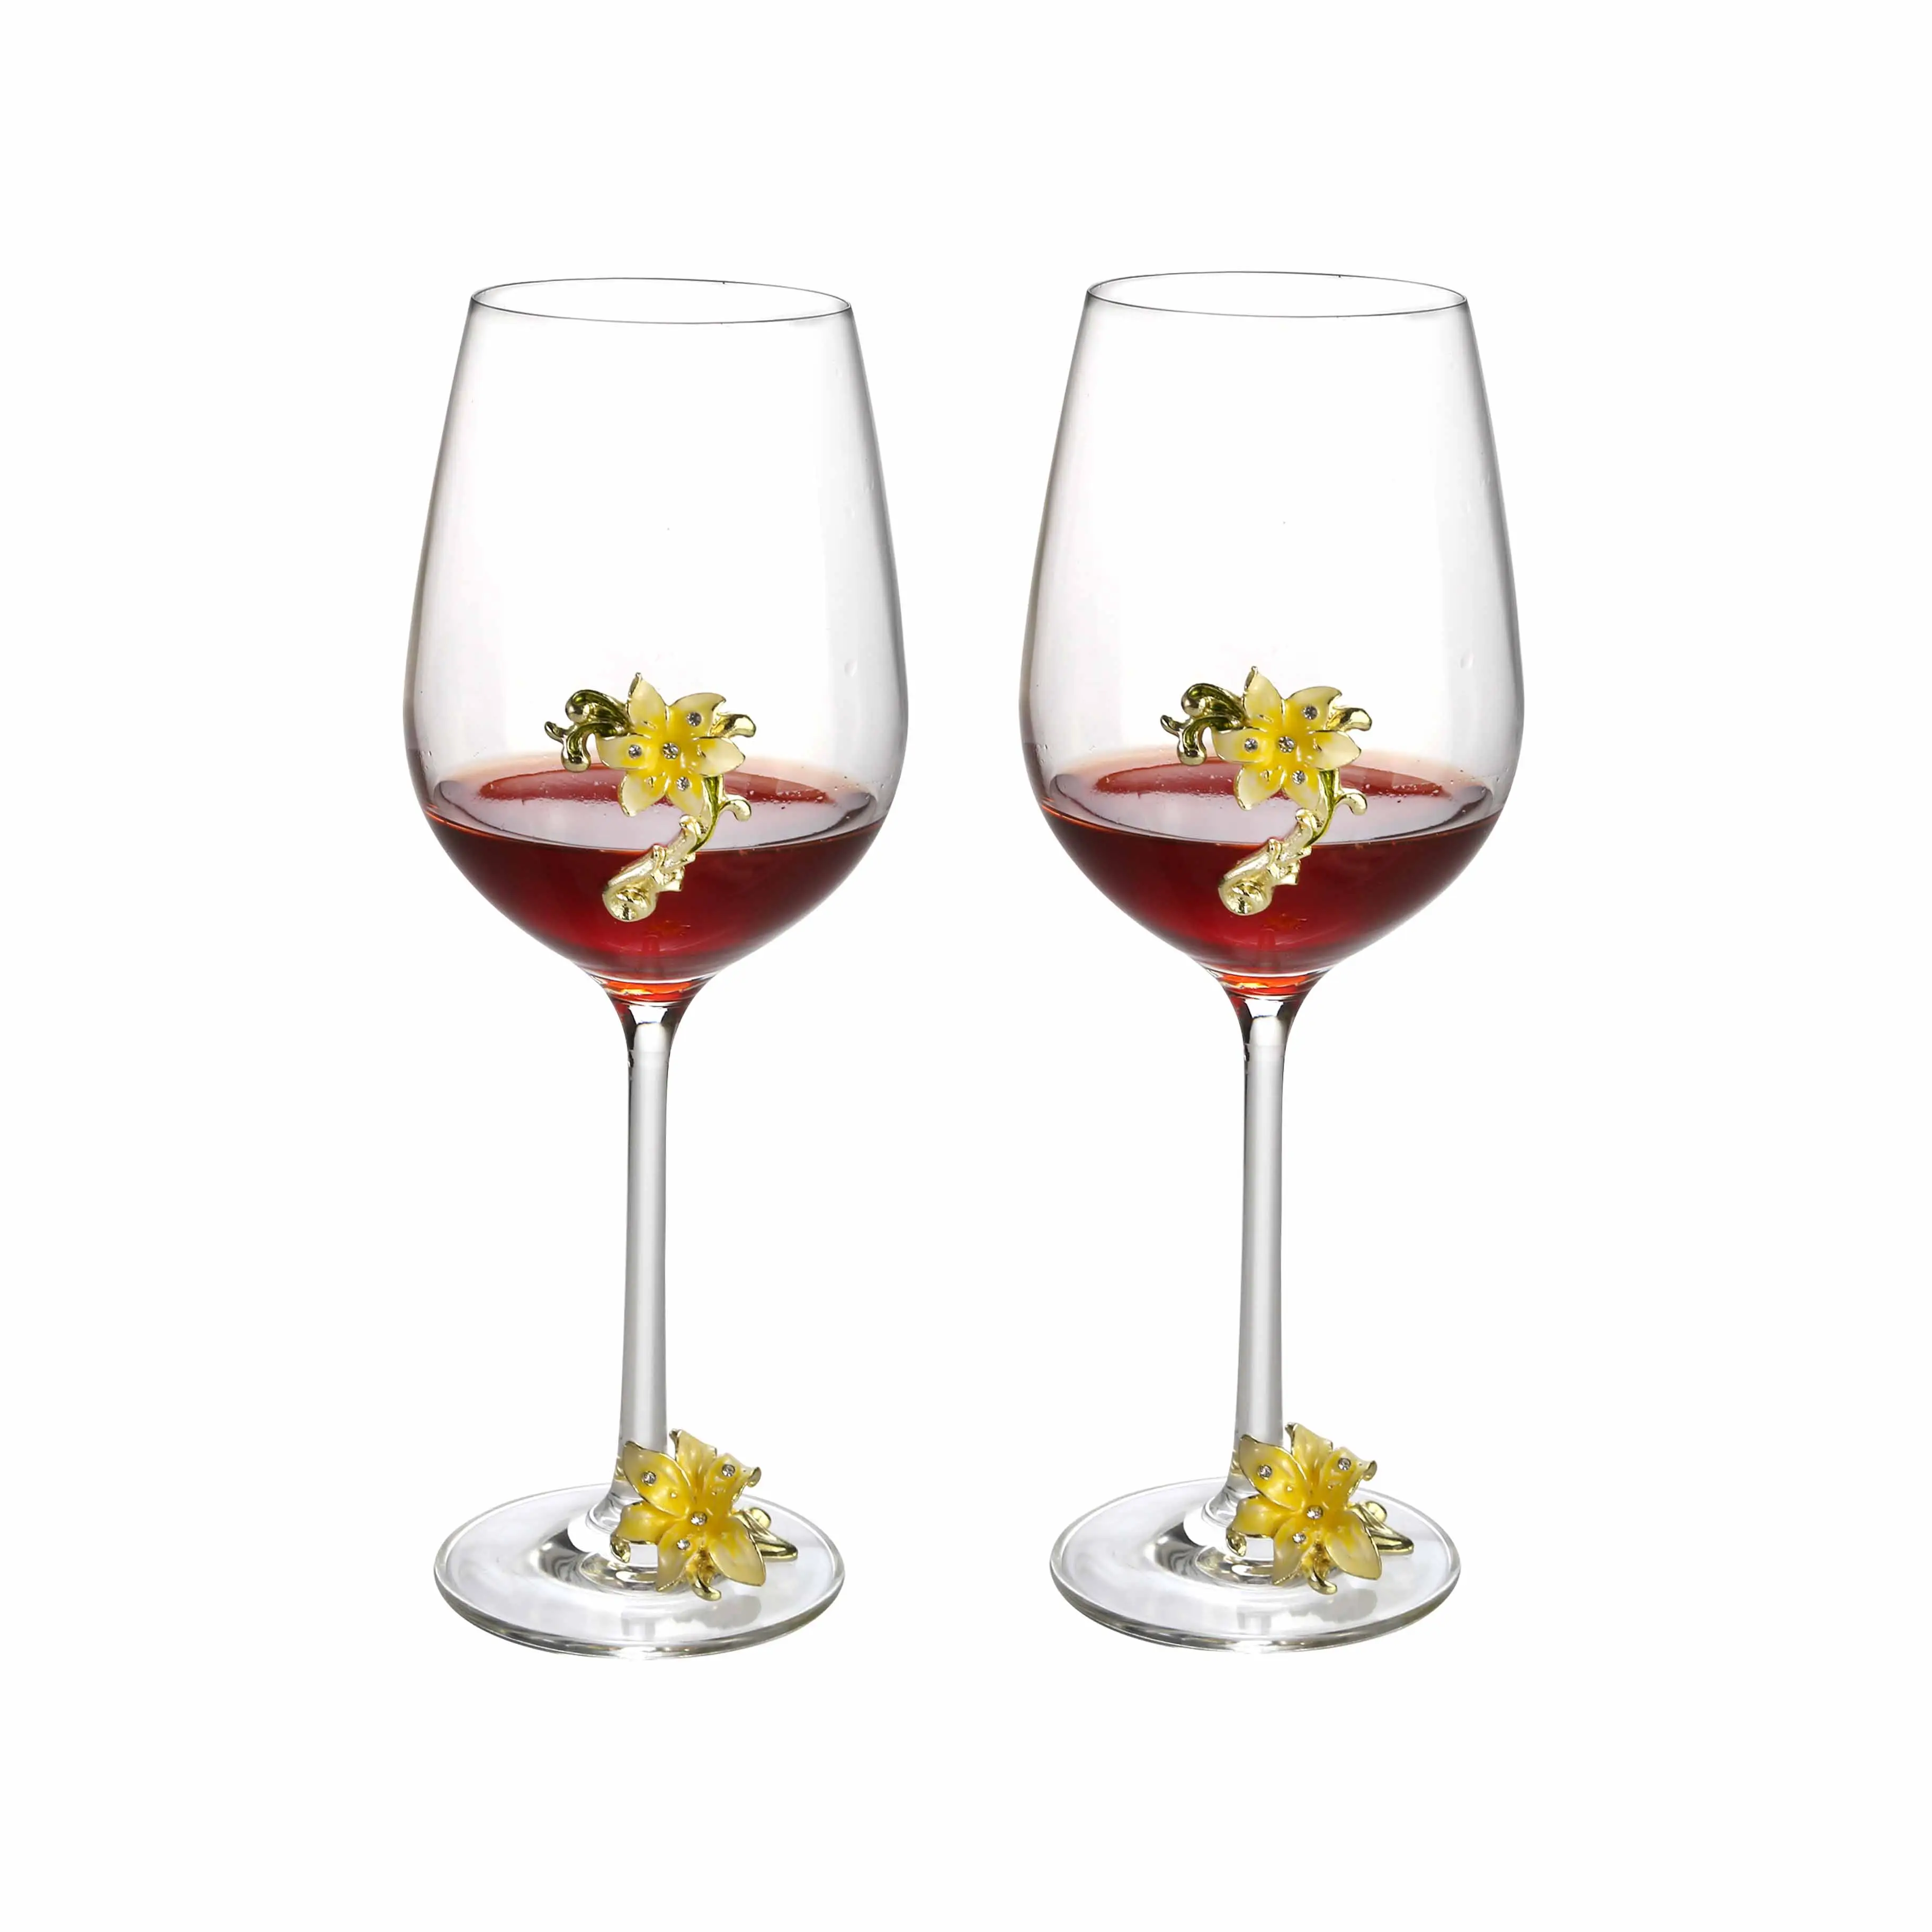 Lead free Enamel Crystal Glass Goblet set of 2 Handmade Flower Wine Glasses for Wine Tasting Christmas Gift copa de vino copa